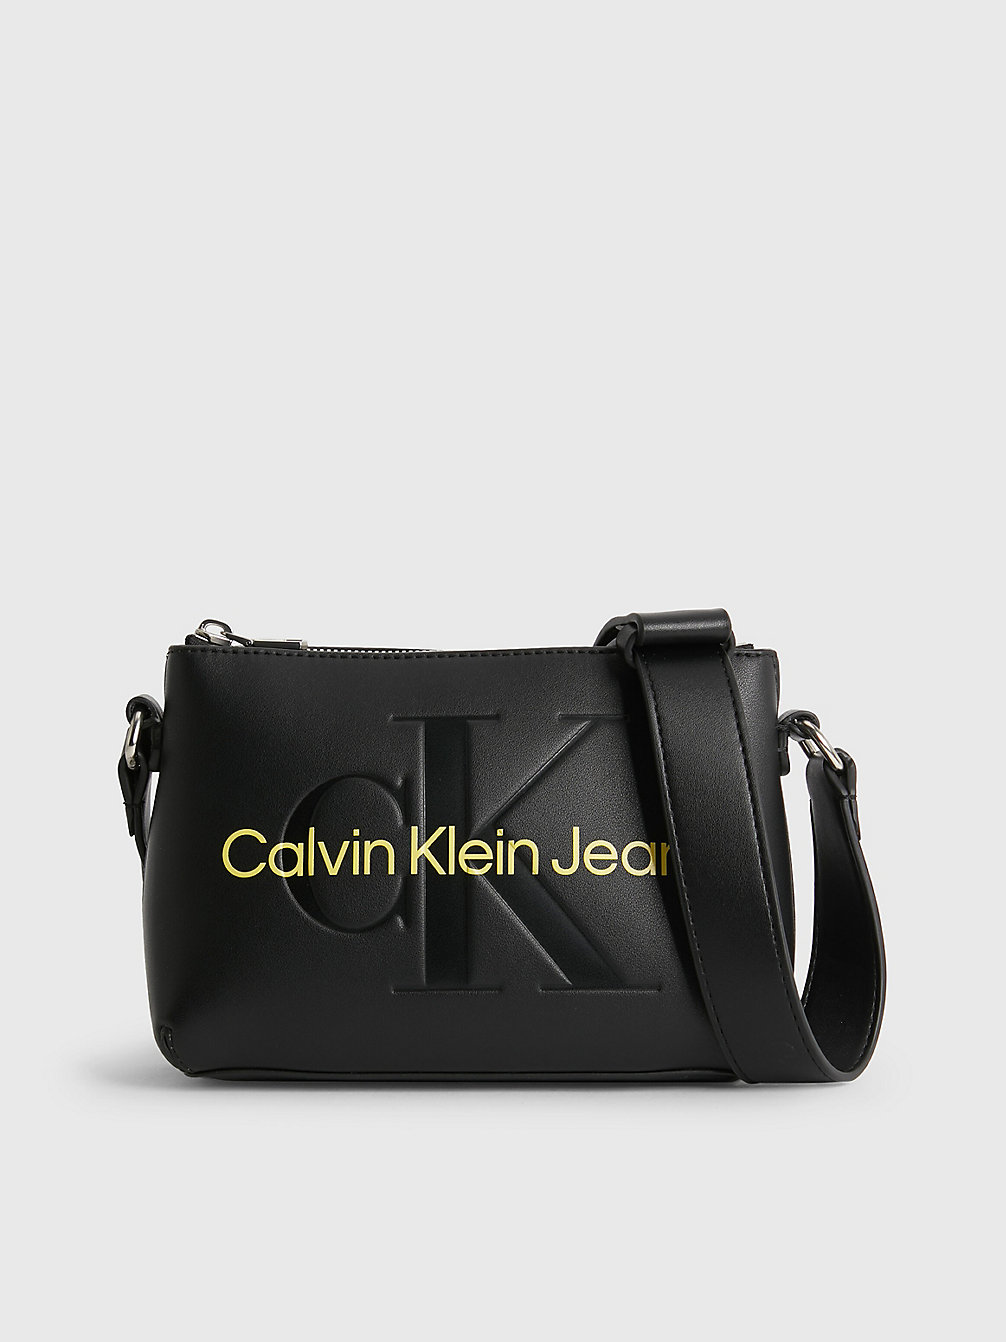 Descubrir 92+ imagen calvin klein black sling bag